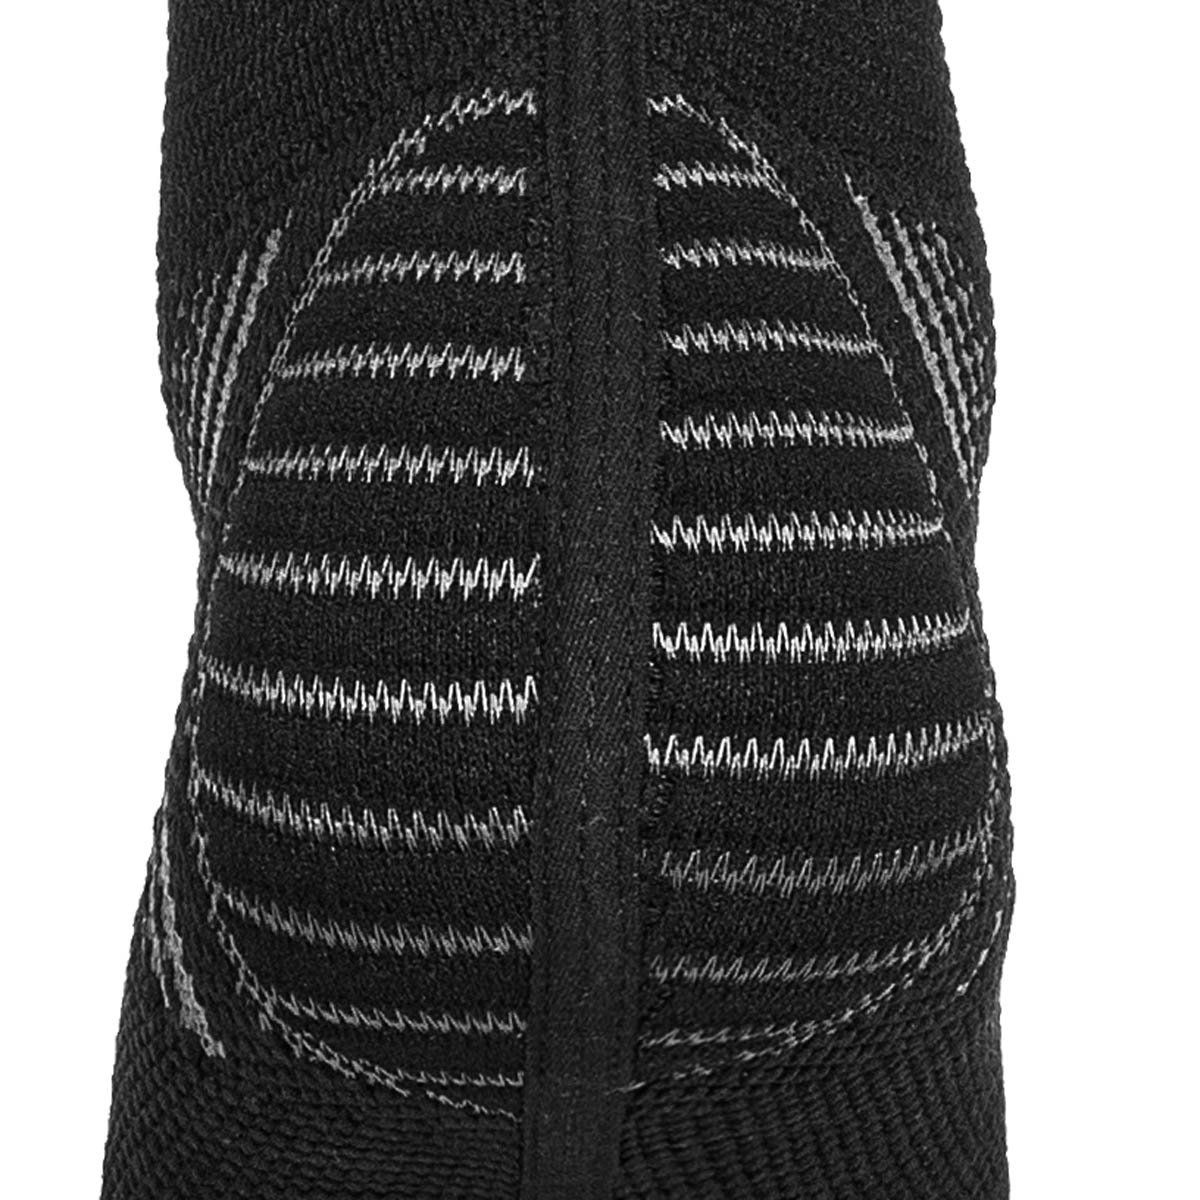 Tornozeleira de Compressão Sense Knit 3D Alasca:Preto/P/Unissex - 7